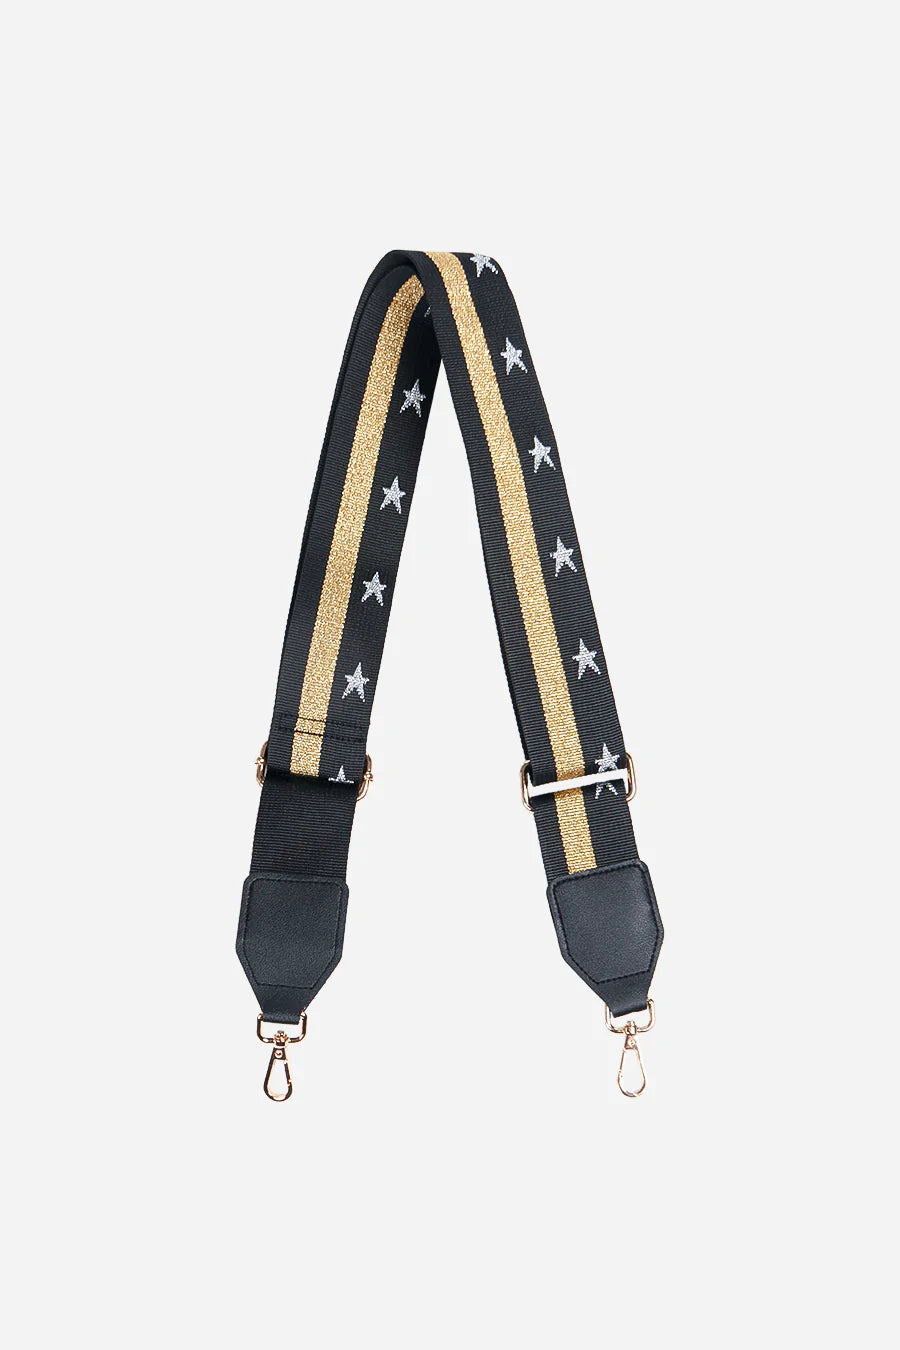 Crossbody Bag Strap in Black Gold Stars &amp; Stripes